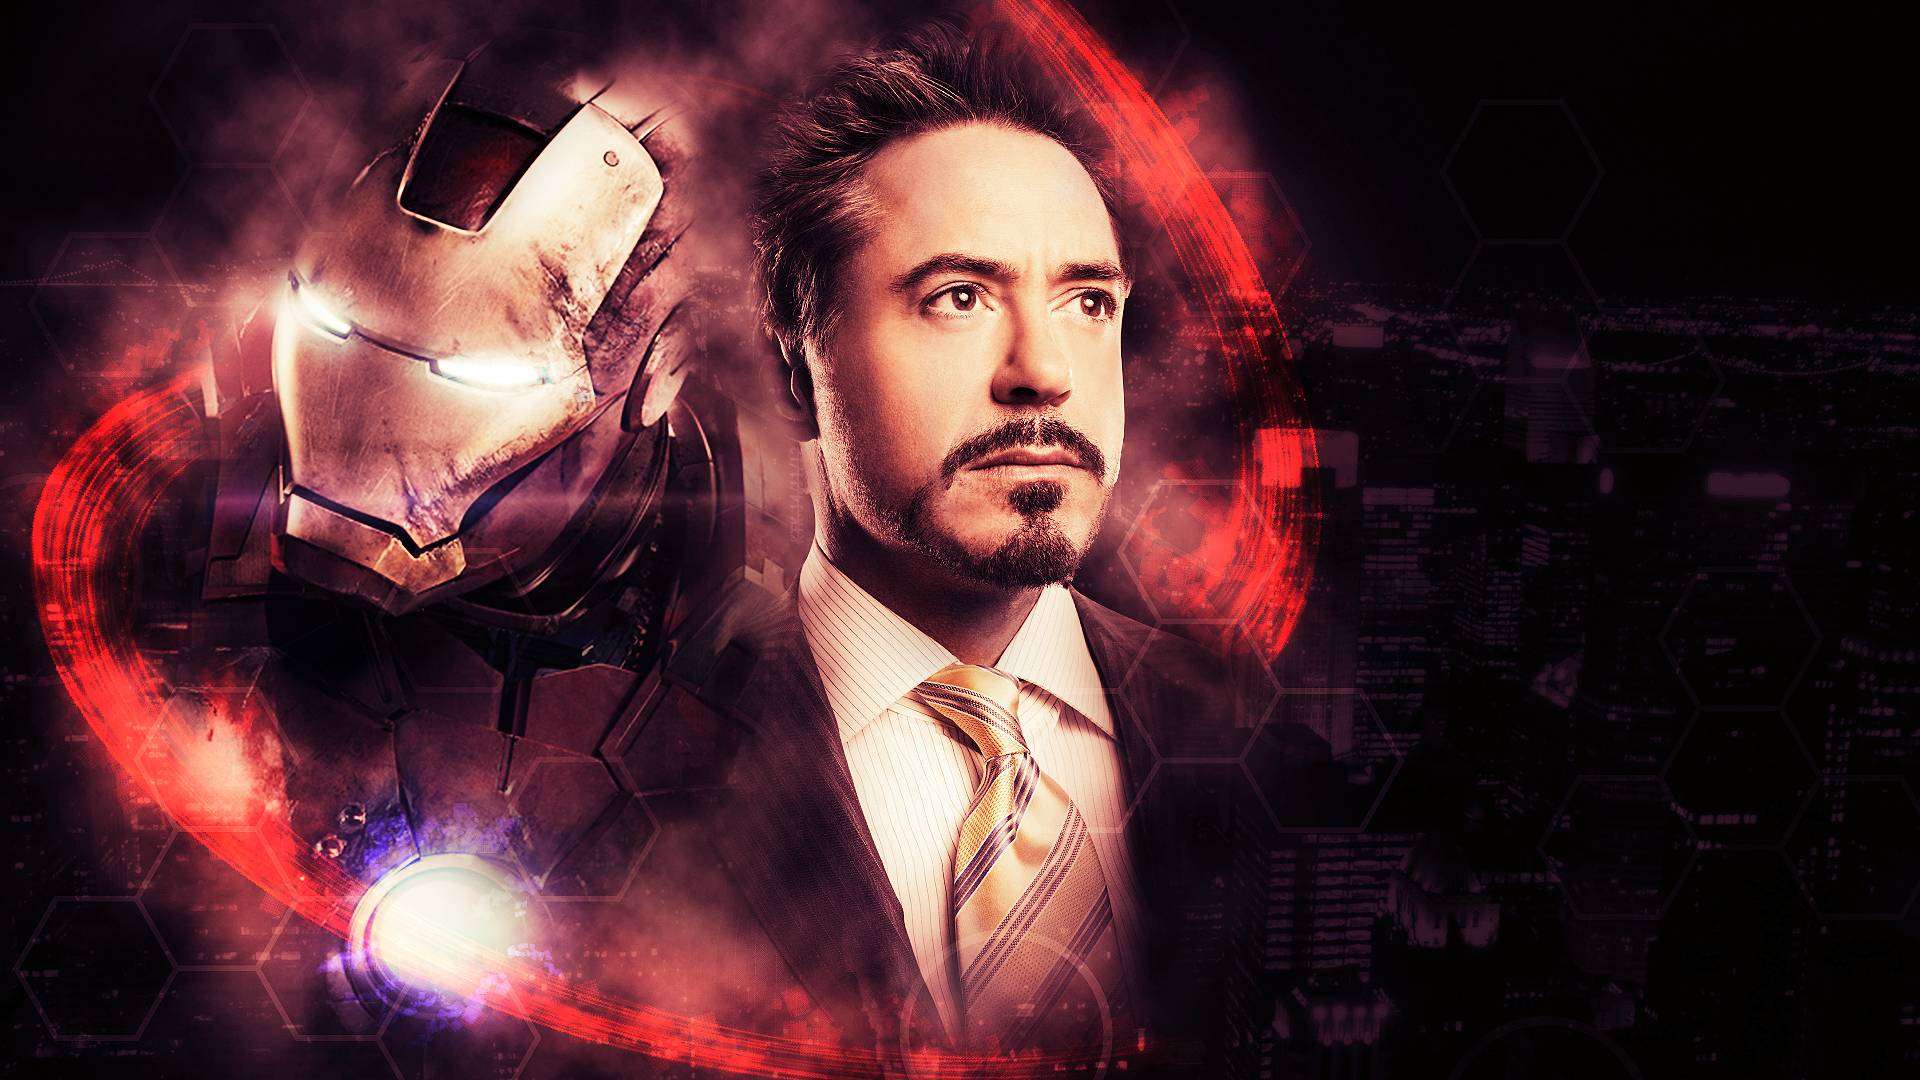 Iron Man Tony Stark Quotes Wallpaper